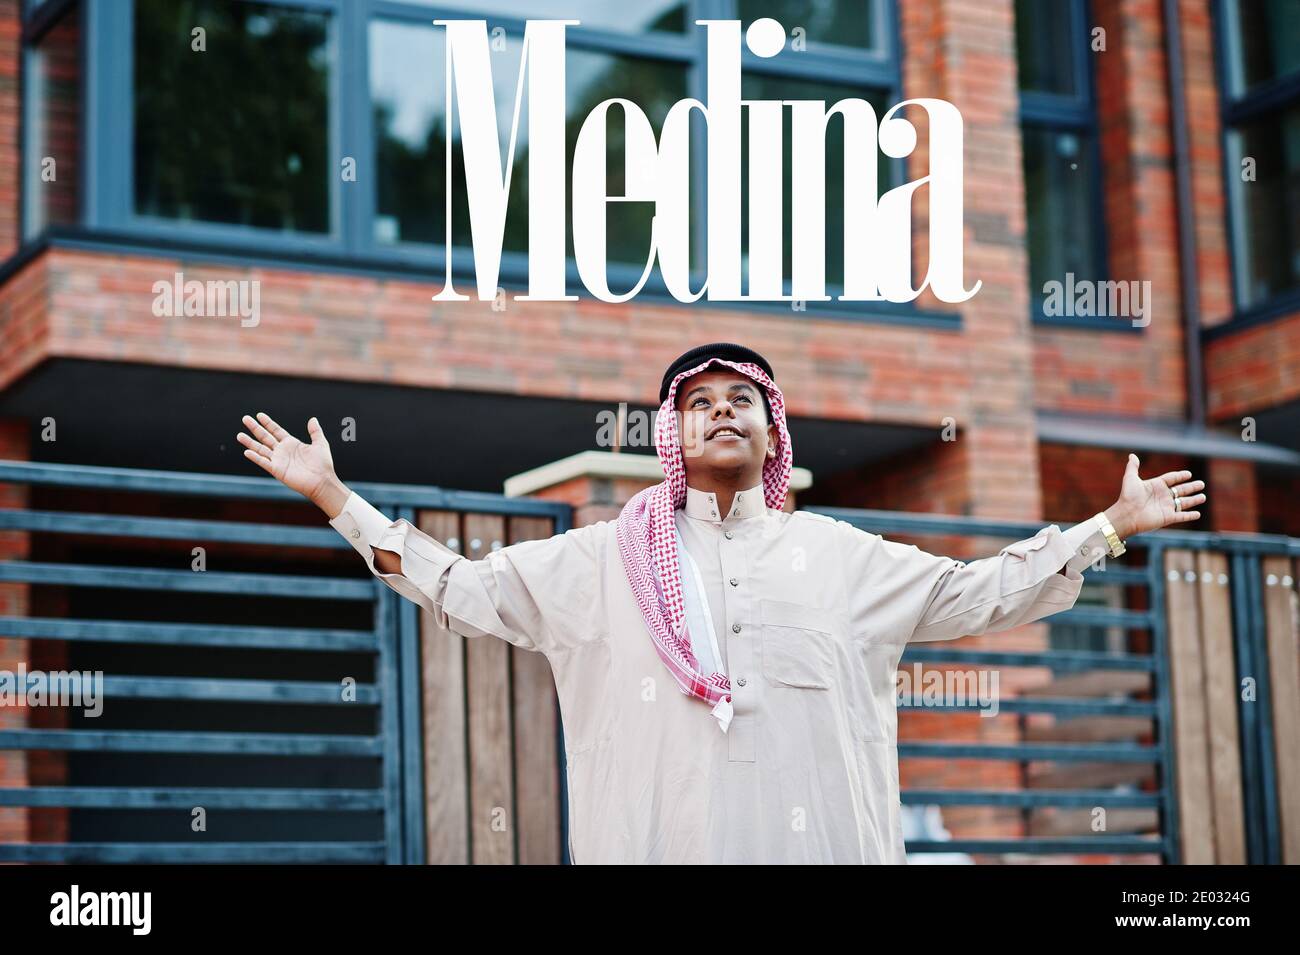 Medina - größte Stadt Saudi-Arabiens. Naher Osten saudi-arabischen Mann posierte auf der Straße gegen moderne Gebäude seine Hände in der Luft. Stockfoto